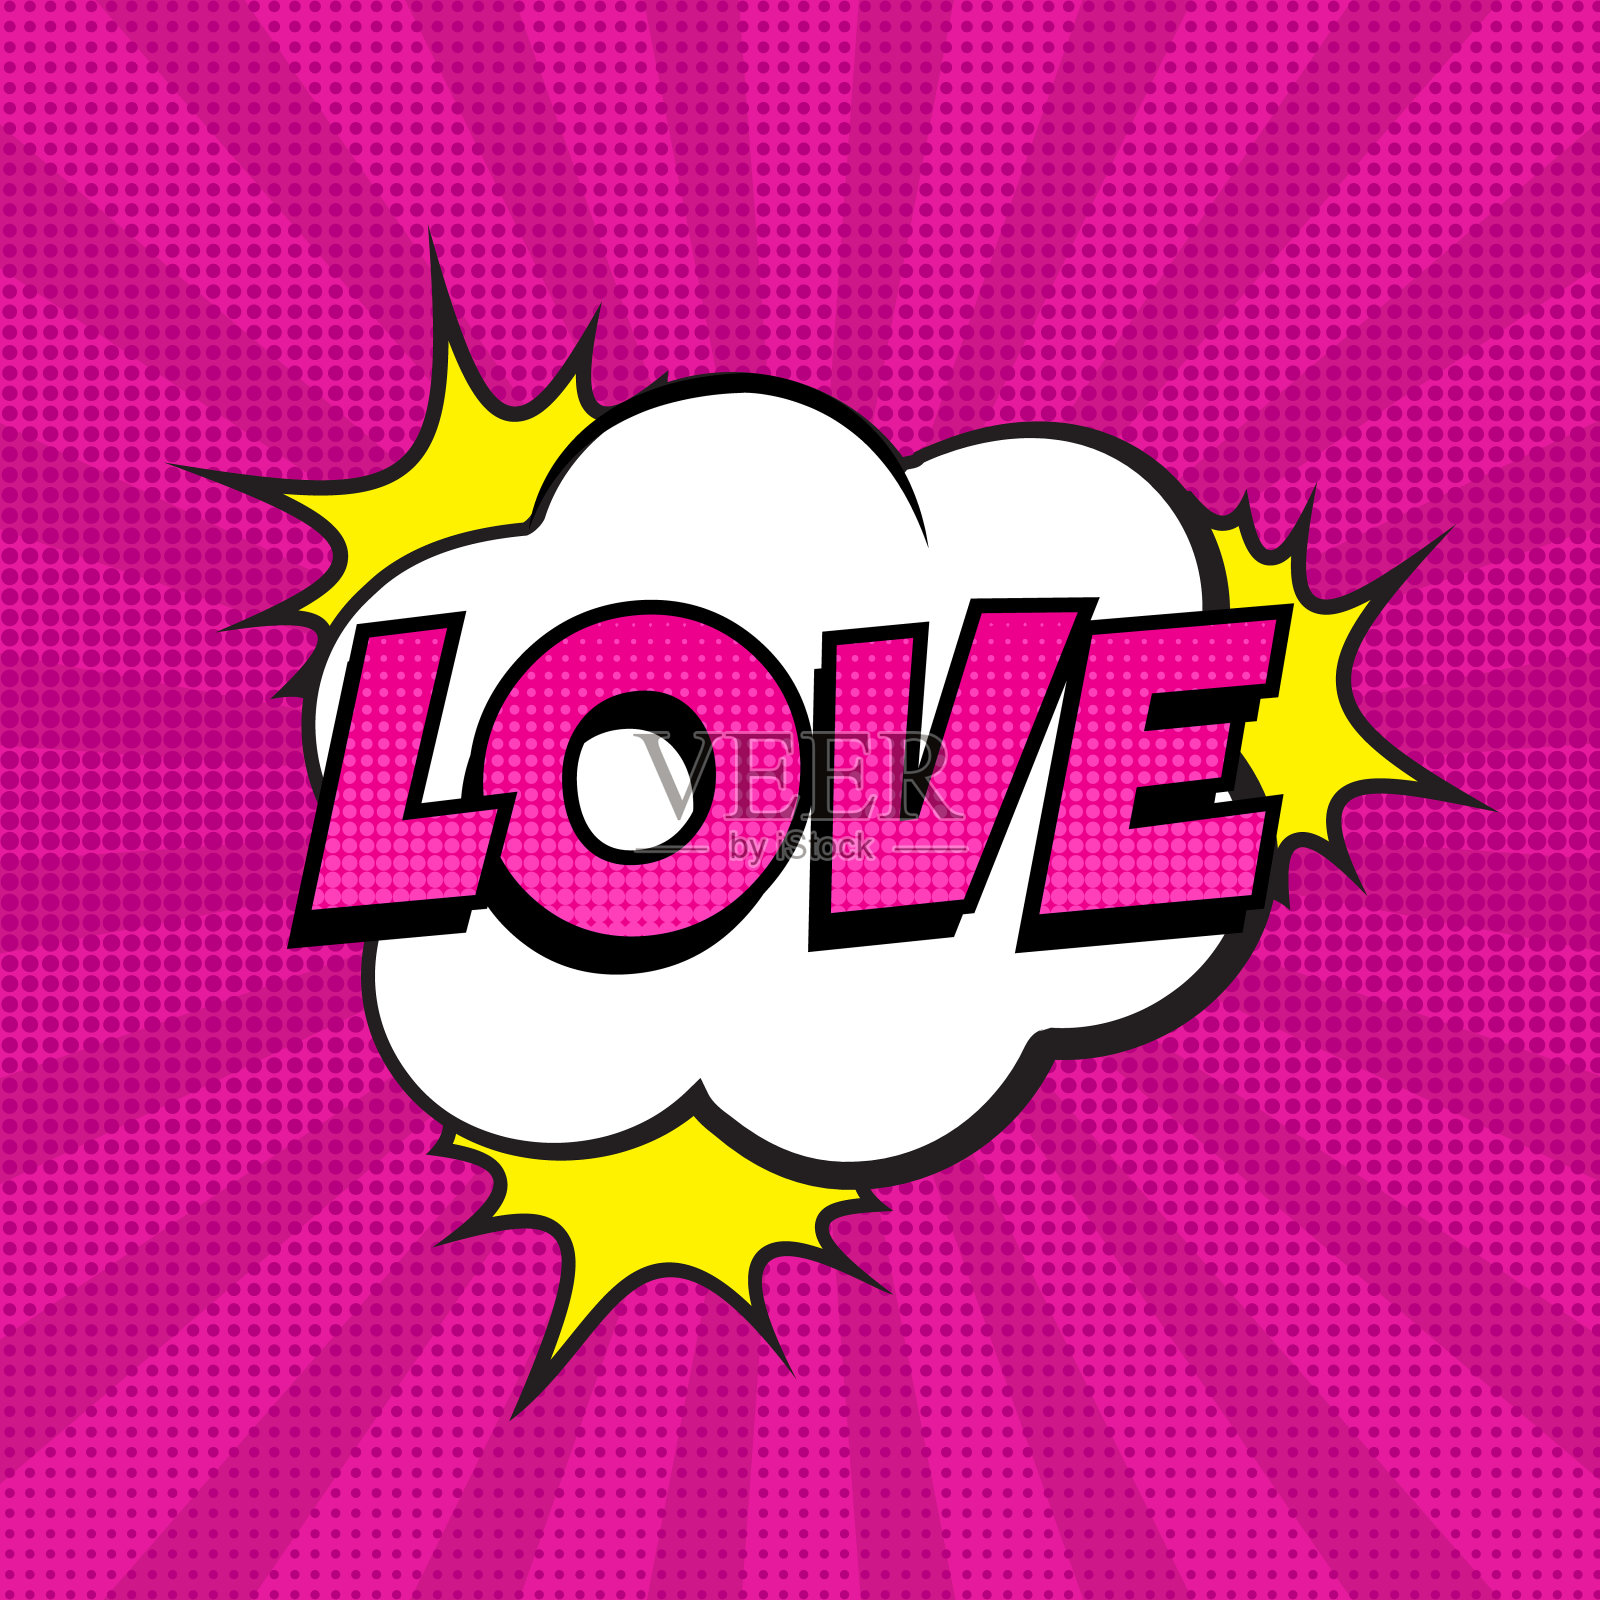 复古喜剧演讲气泡与爱的表达文字上五颜六色的半色调粉红条纹背景与星星。插画图片素材